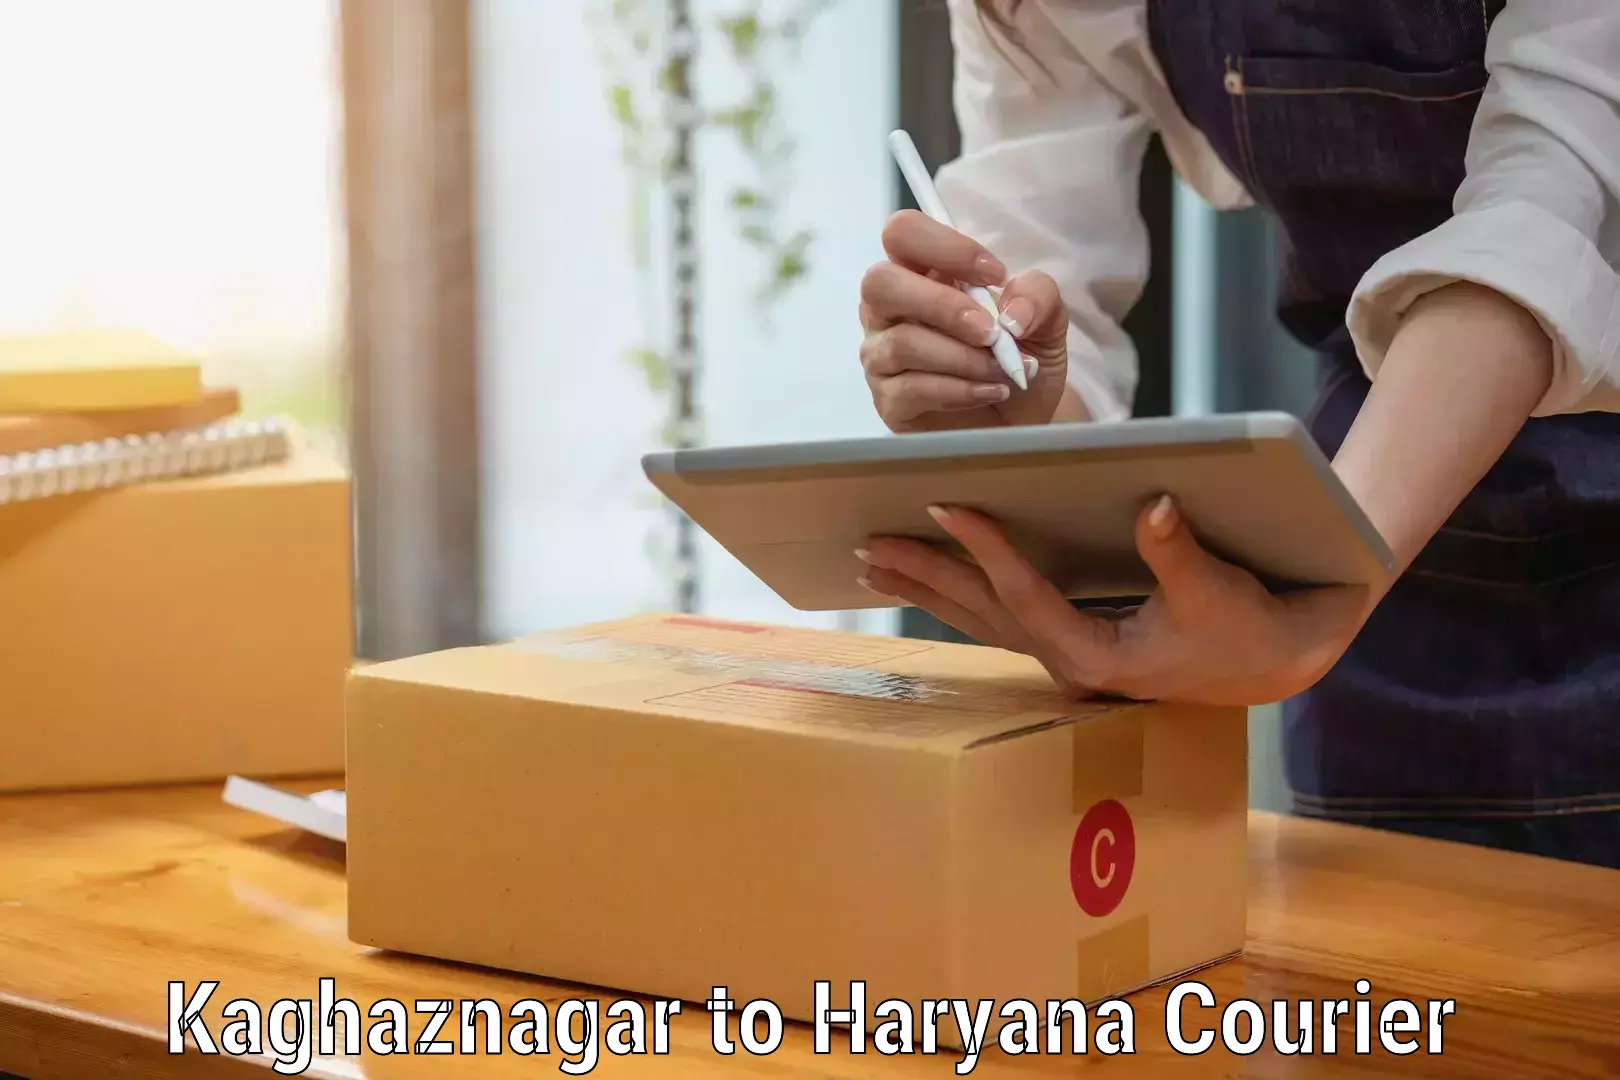 Furniture moving experts Kaghaznagar to Chaudhary Charan Singh Haryana Agricultural University Hisar